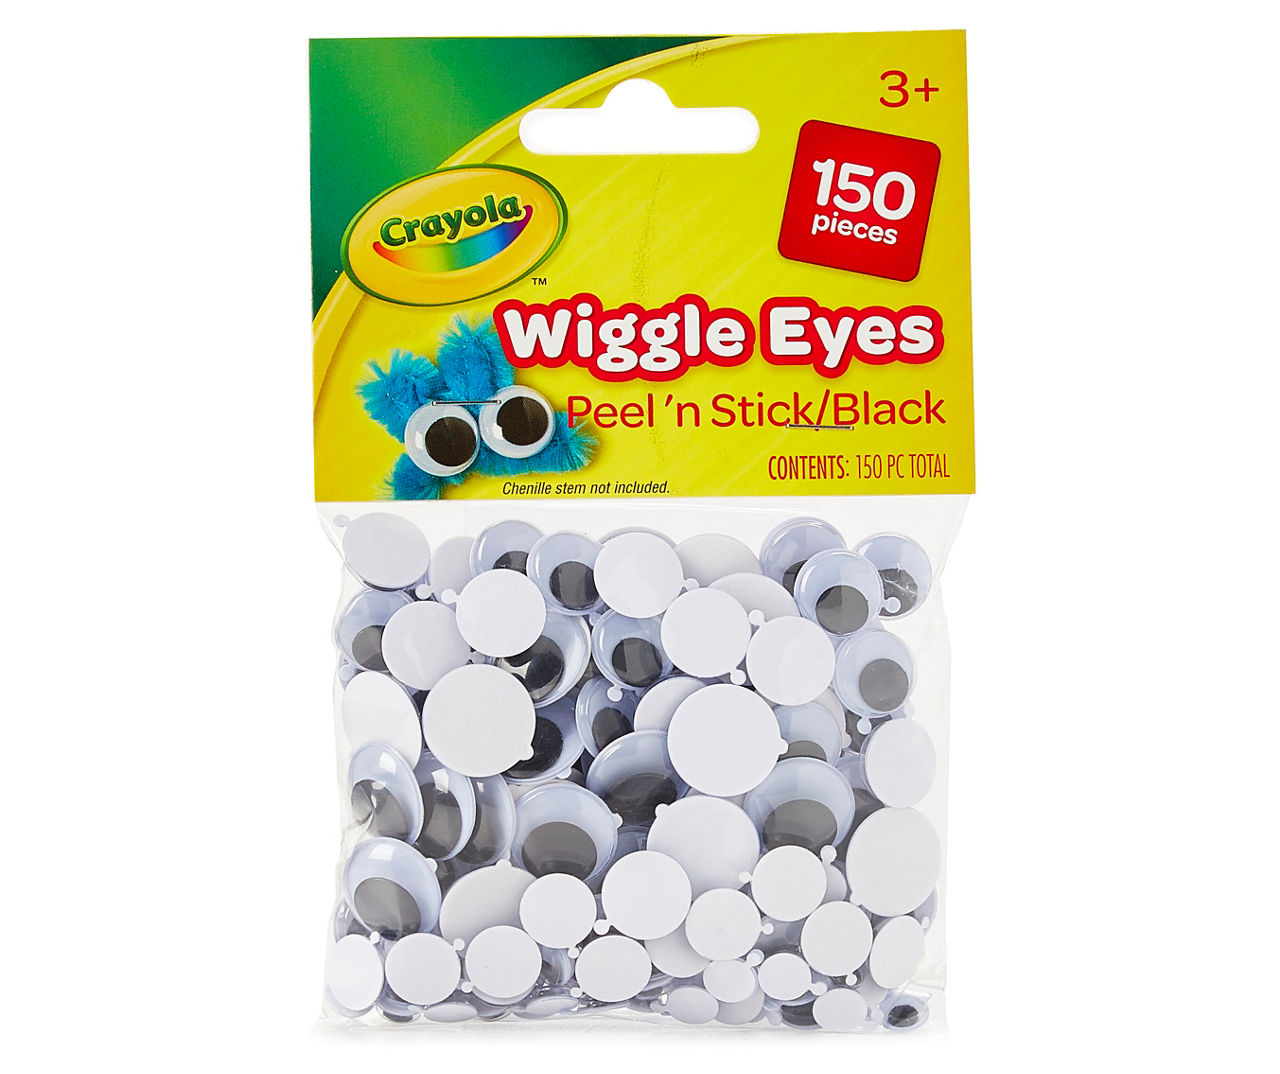 Crayola Peel 'n stick Black Wiggle Eyes, 150-Count